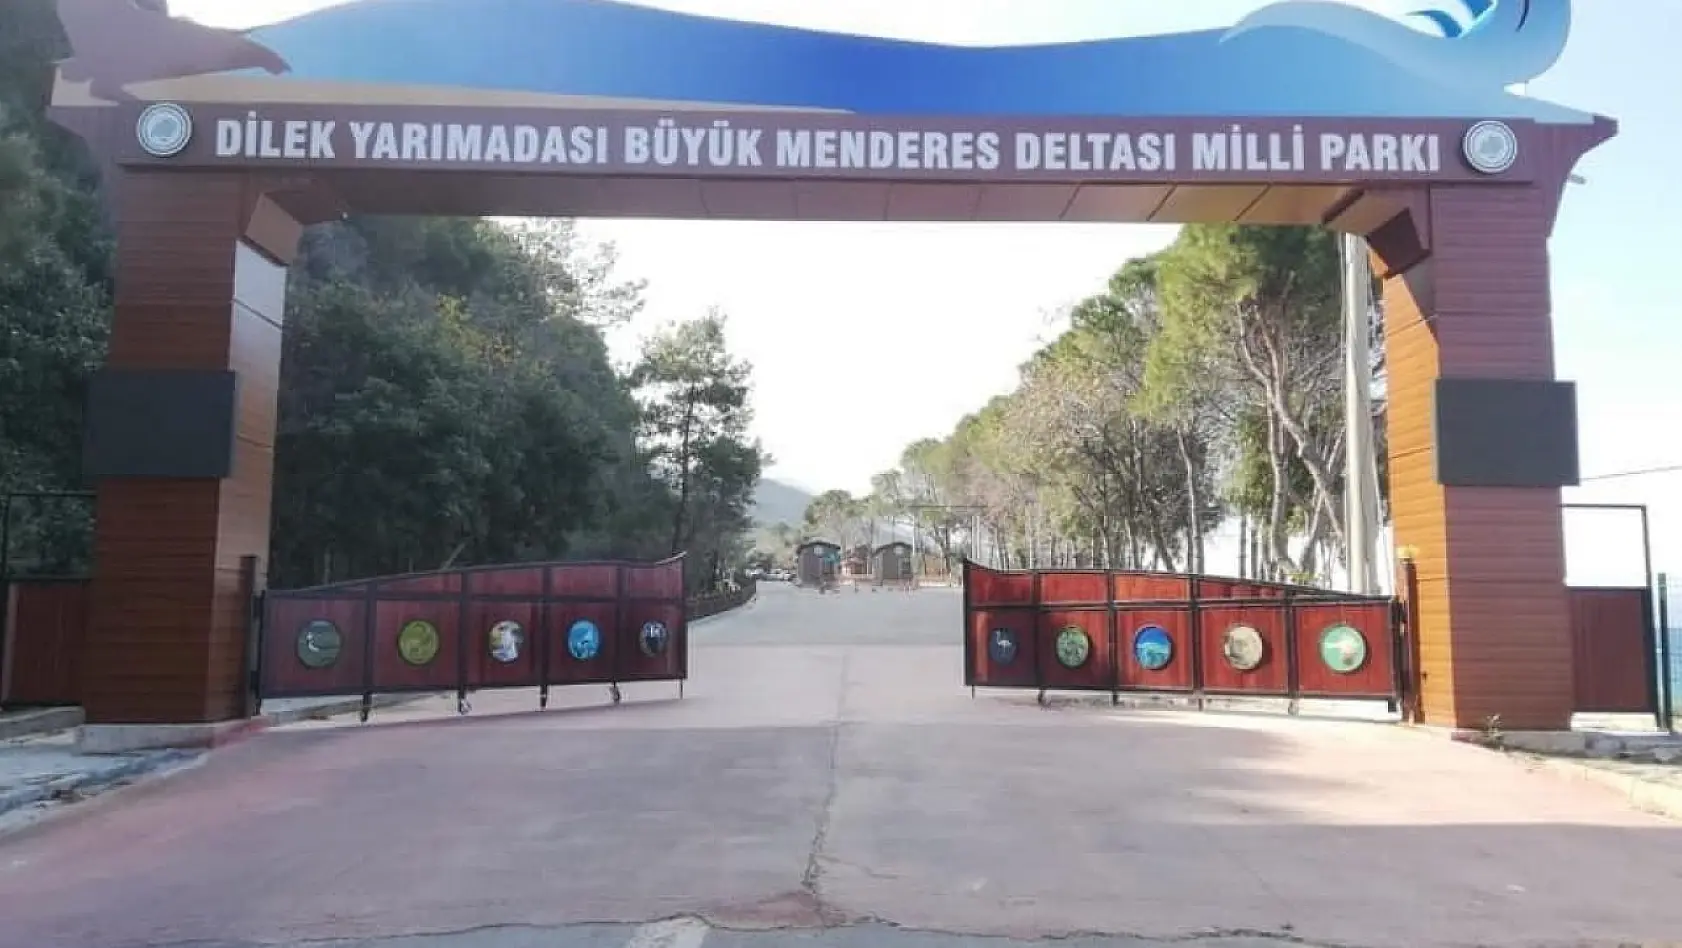 Milli Park bugün ziyaretçi girişine açıldı